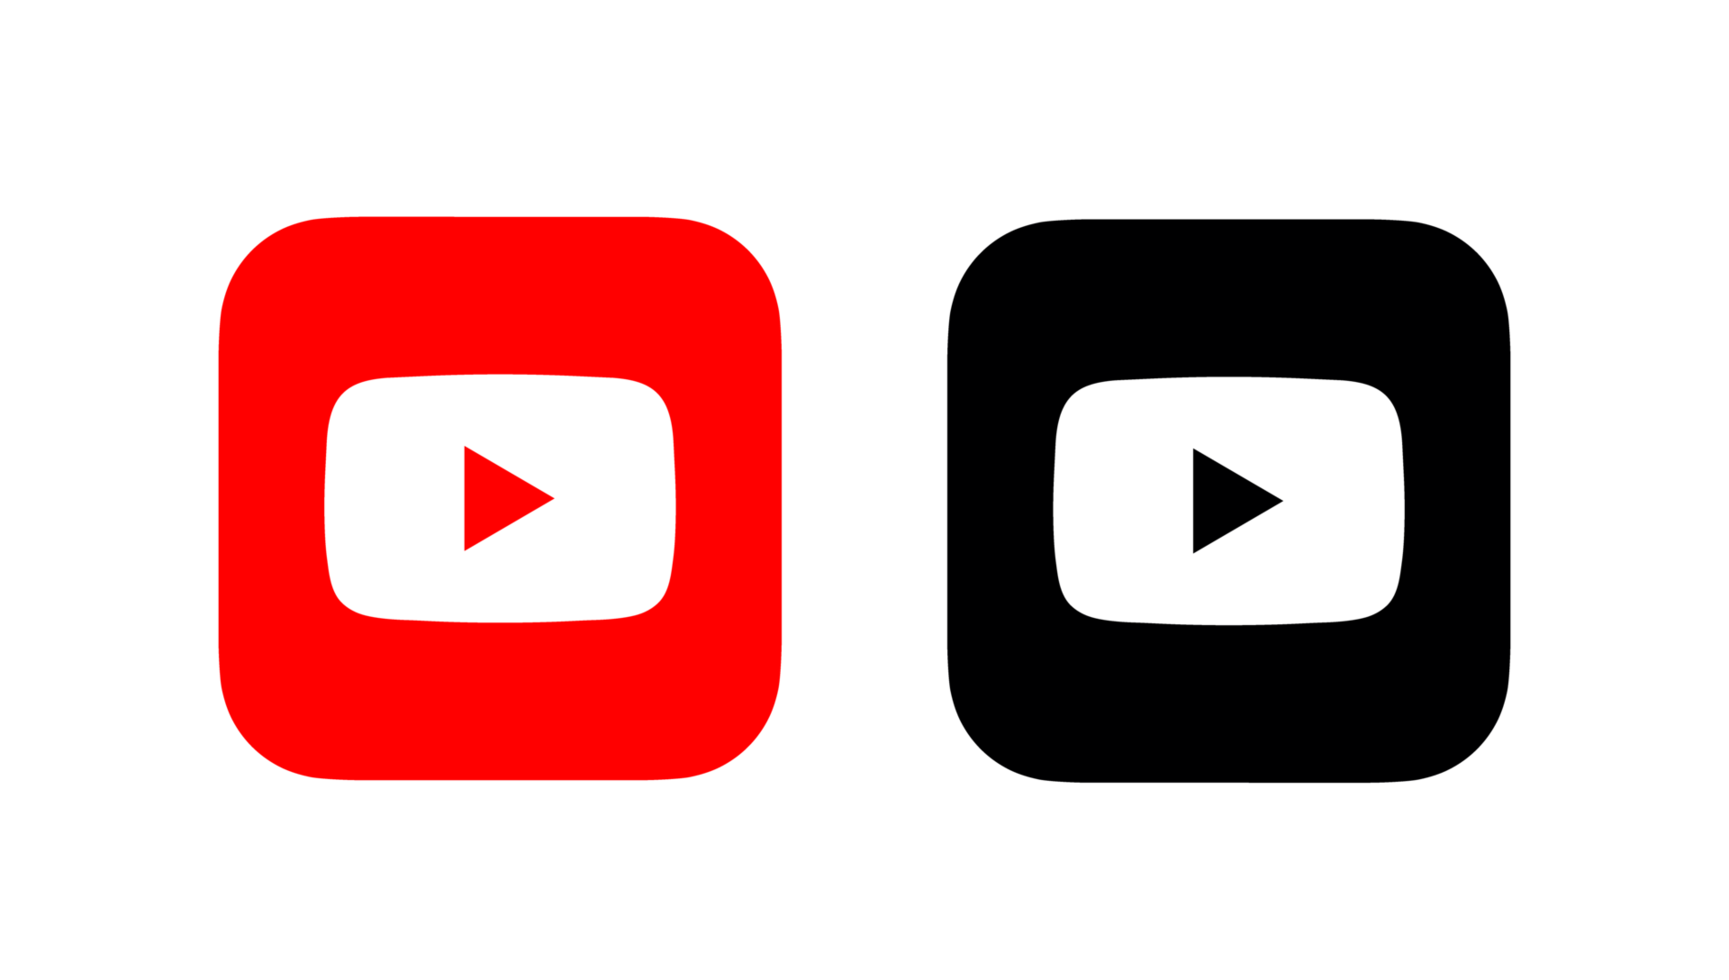 Chỉ 1 cú click chuột, bạn có thể tải ngay bộ sưu tập logo YouTube PNG cực chất lượng từ trang web của chúng tôi.